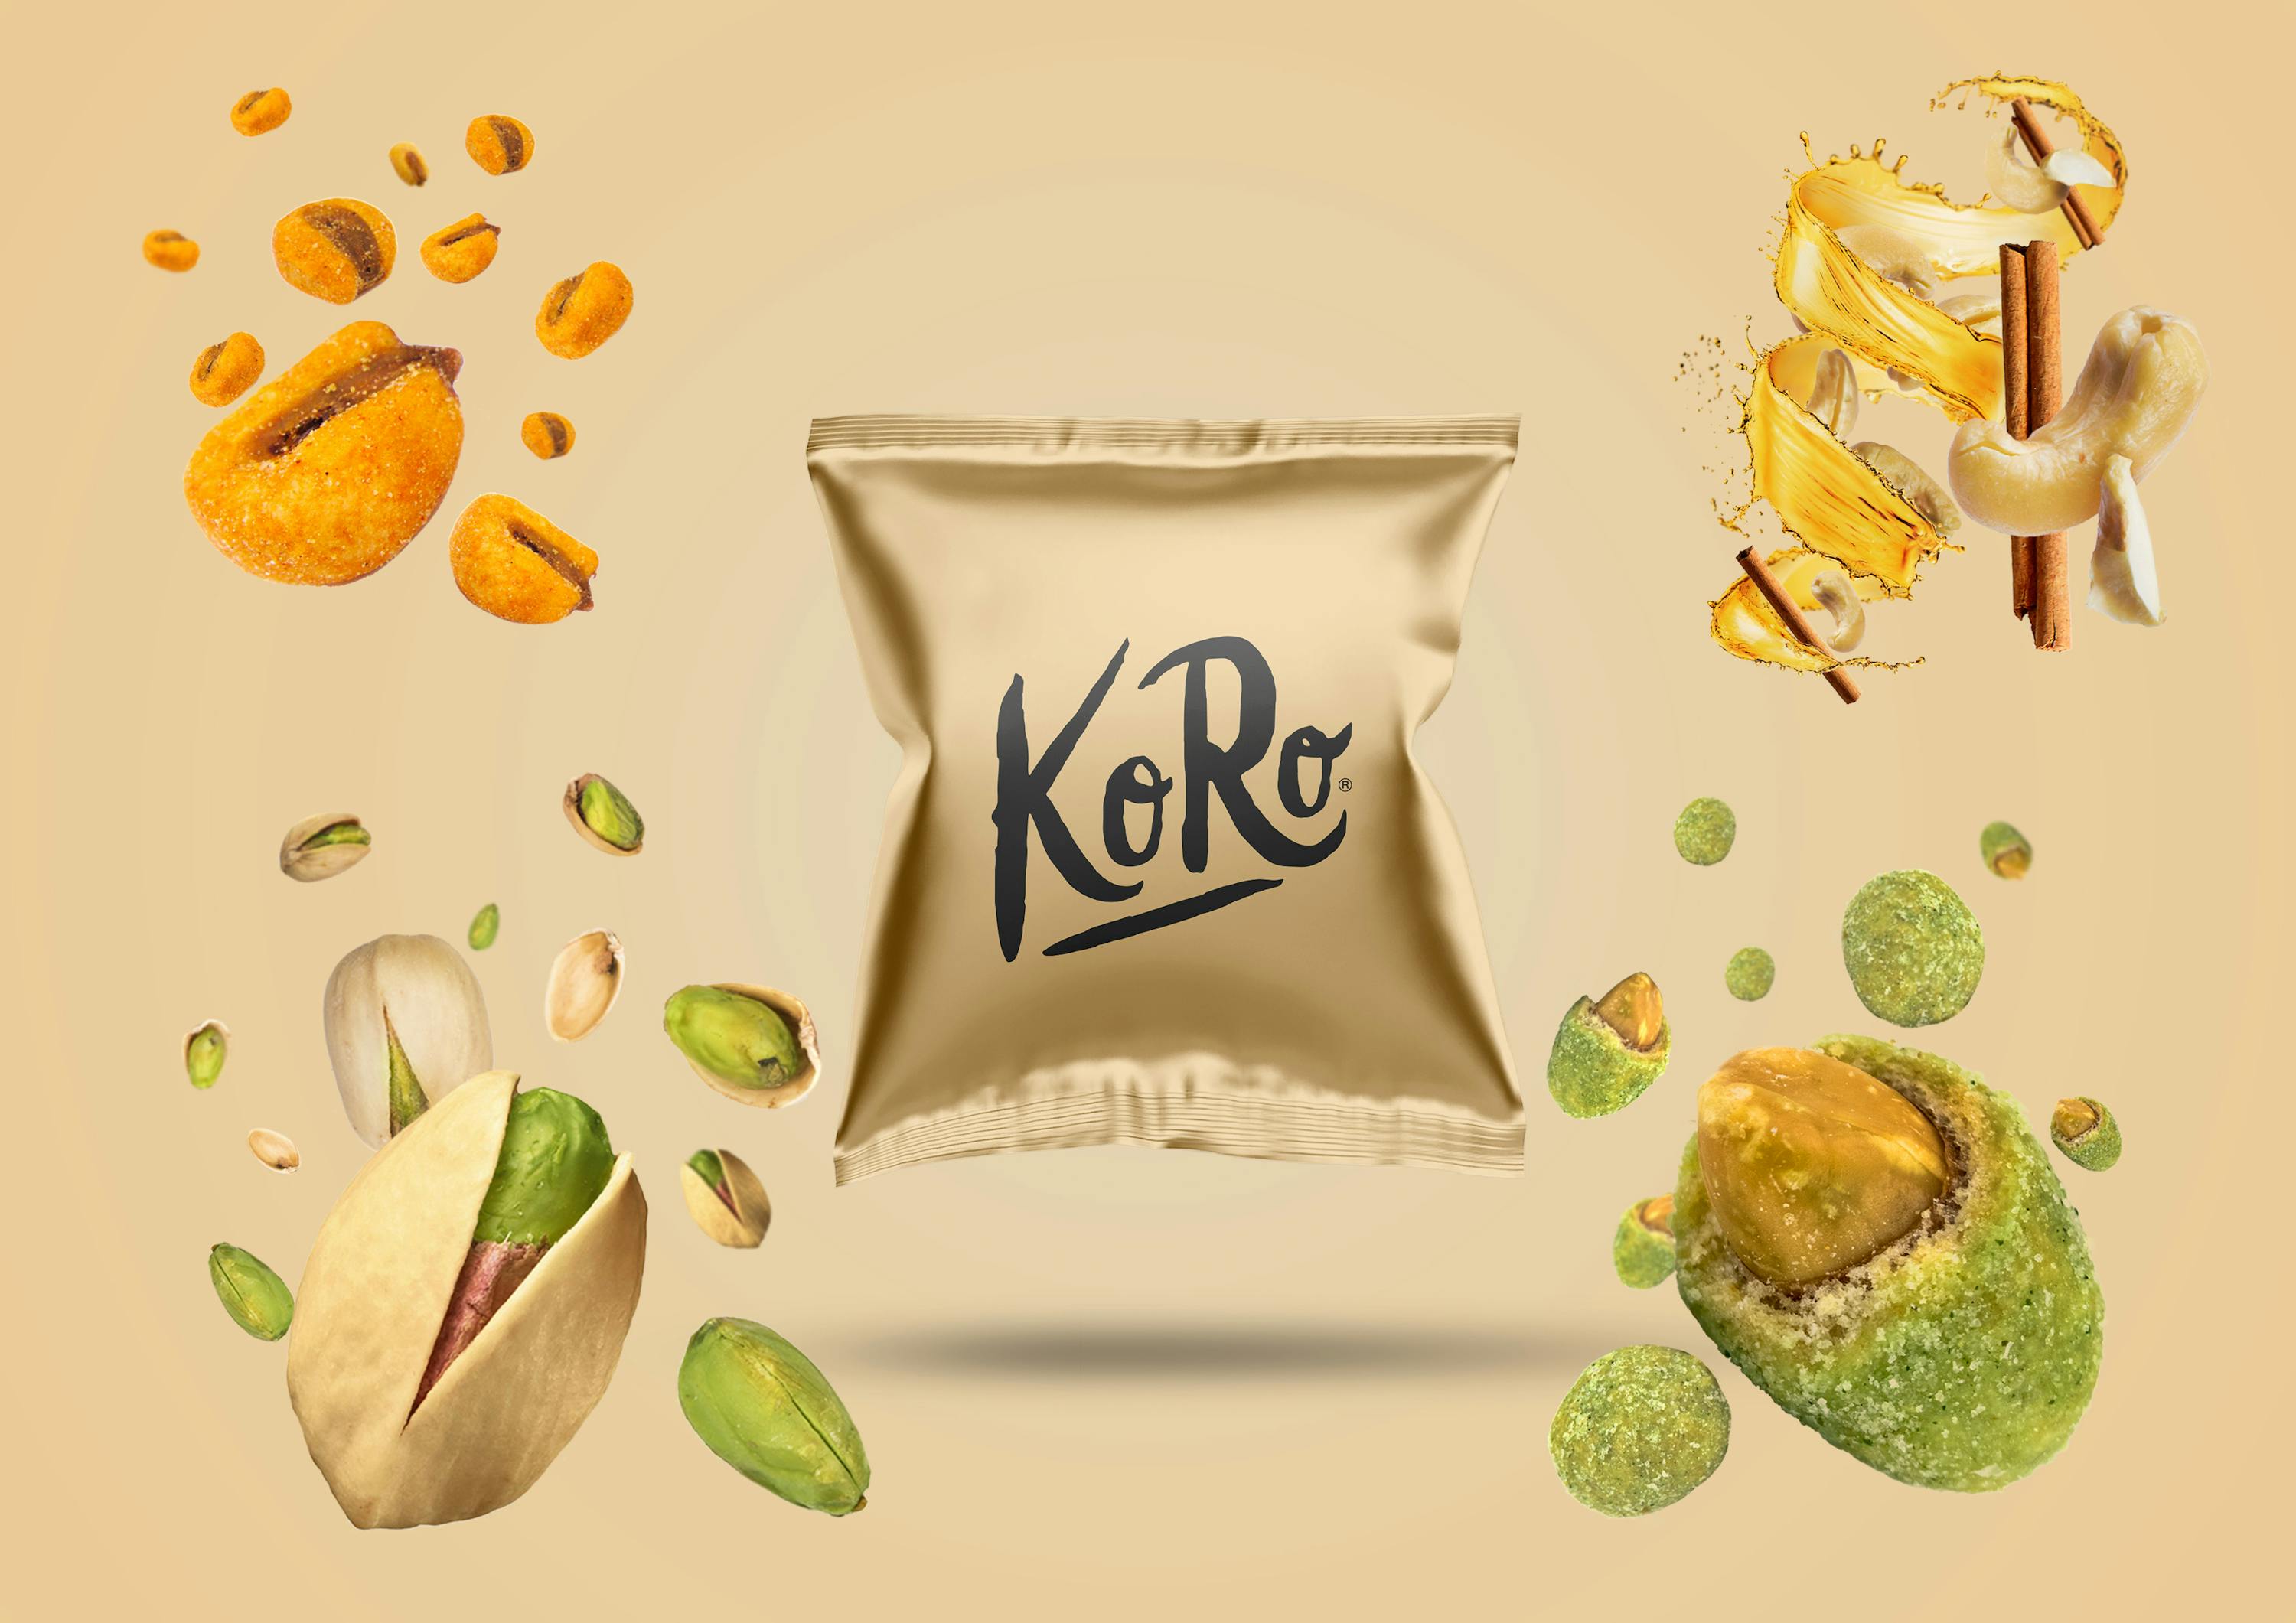 Hier sind die 5 besten salzigen KoRo Snacks für Deinen #Veganuary